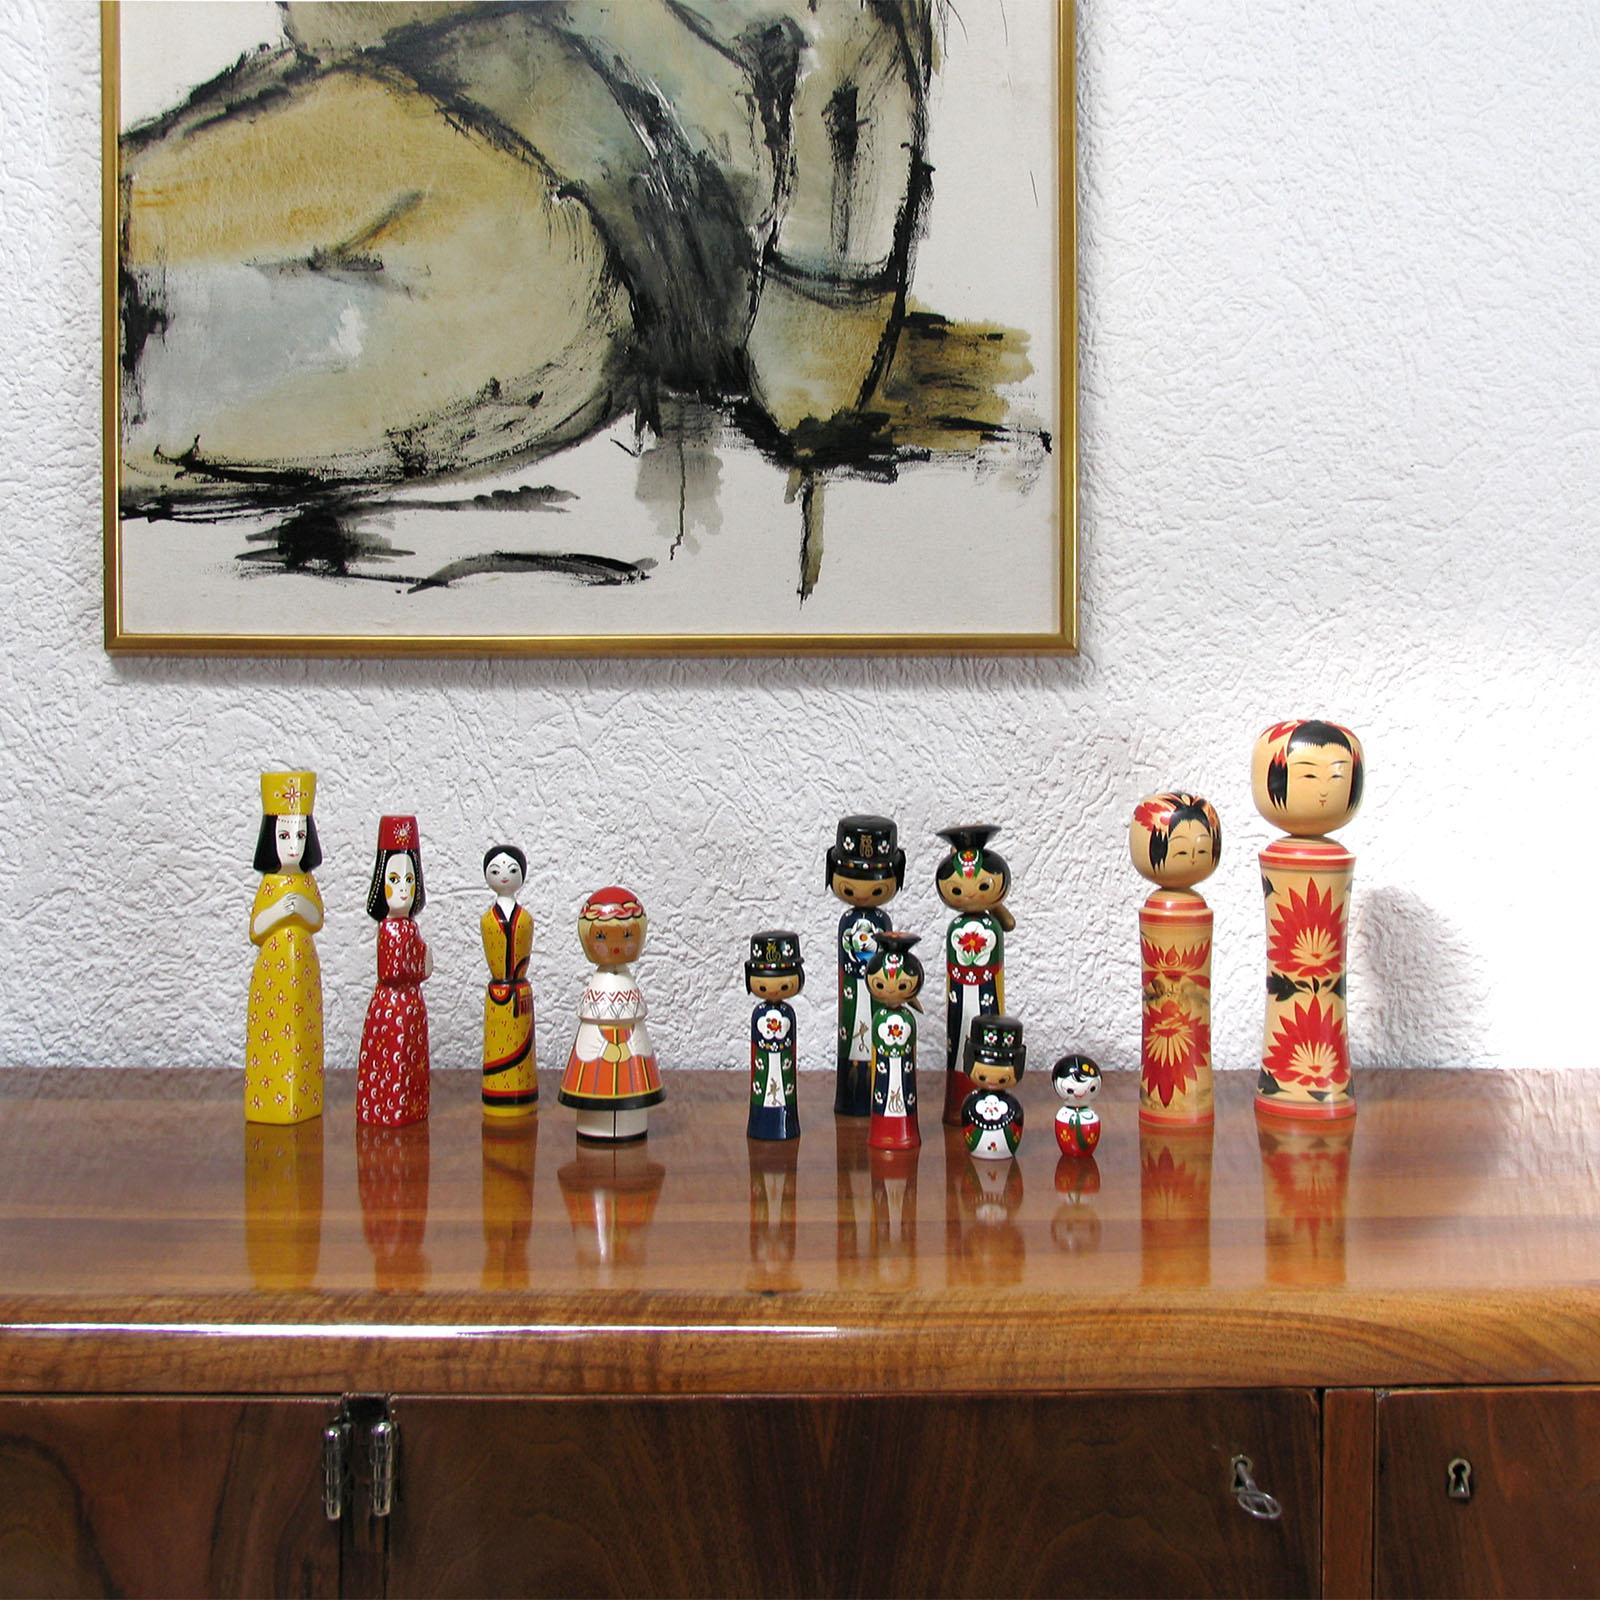 Une belle collection de 6 poupées de mariage vintage à tête branlante des années 1960
Fabriquées à la main en bois, ces poupées de style Kokeshi joliment décorées sont des têtes de bob et sont très anciennes. Datant des années 50 ou 60, ils sont